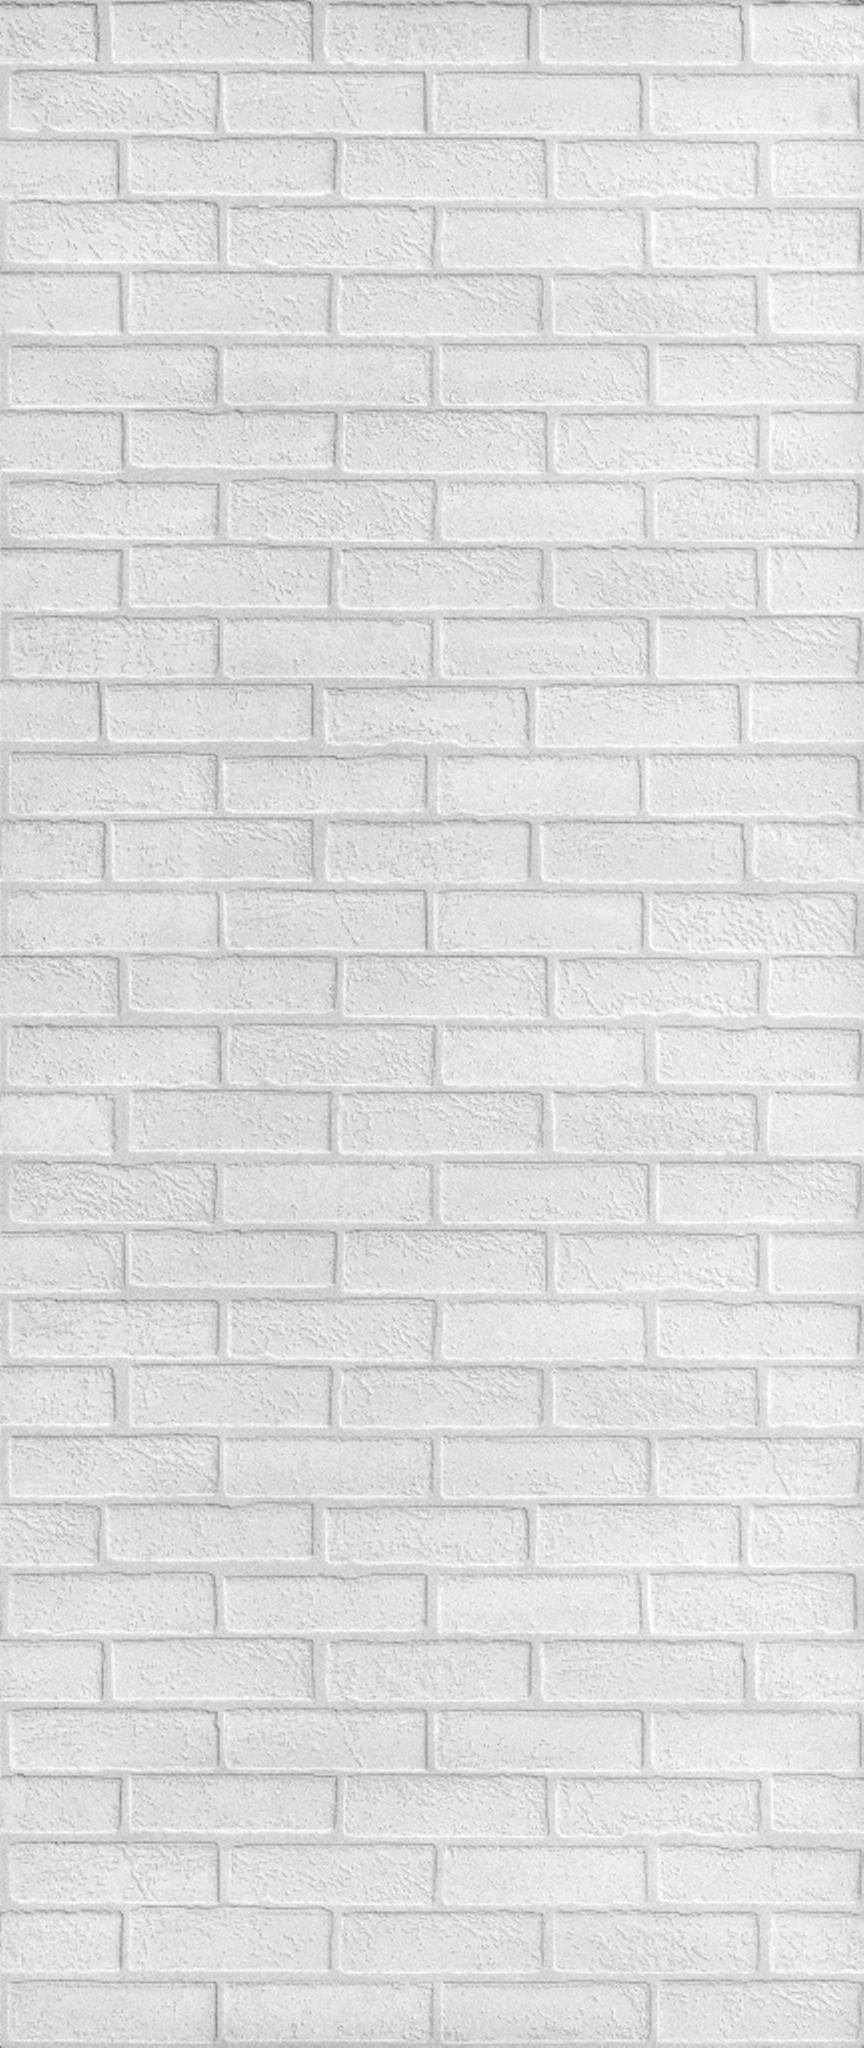 Стеновая панель МДФ Albico кирпич белый 2200х930 мм